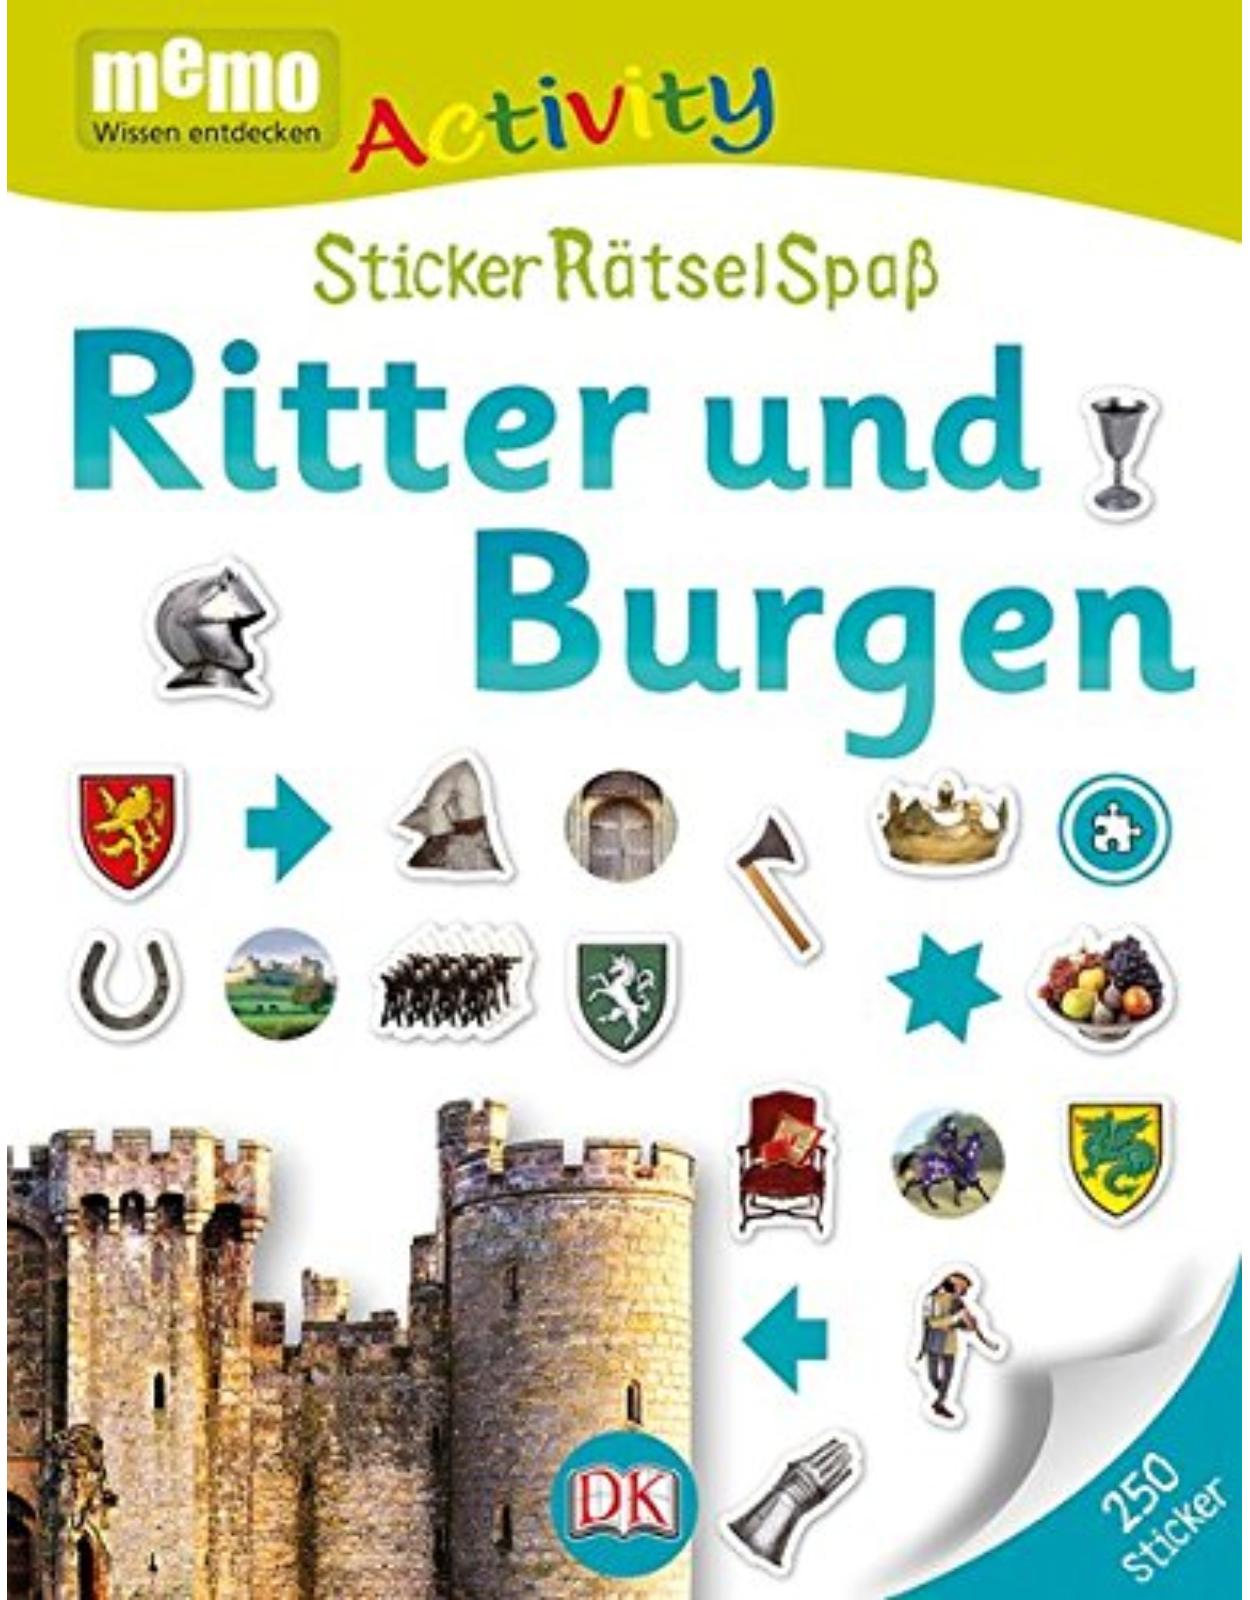 Memo Activity-Ritter und Burgen